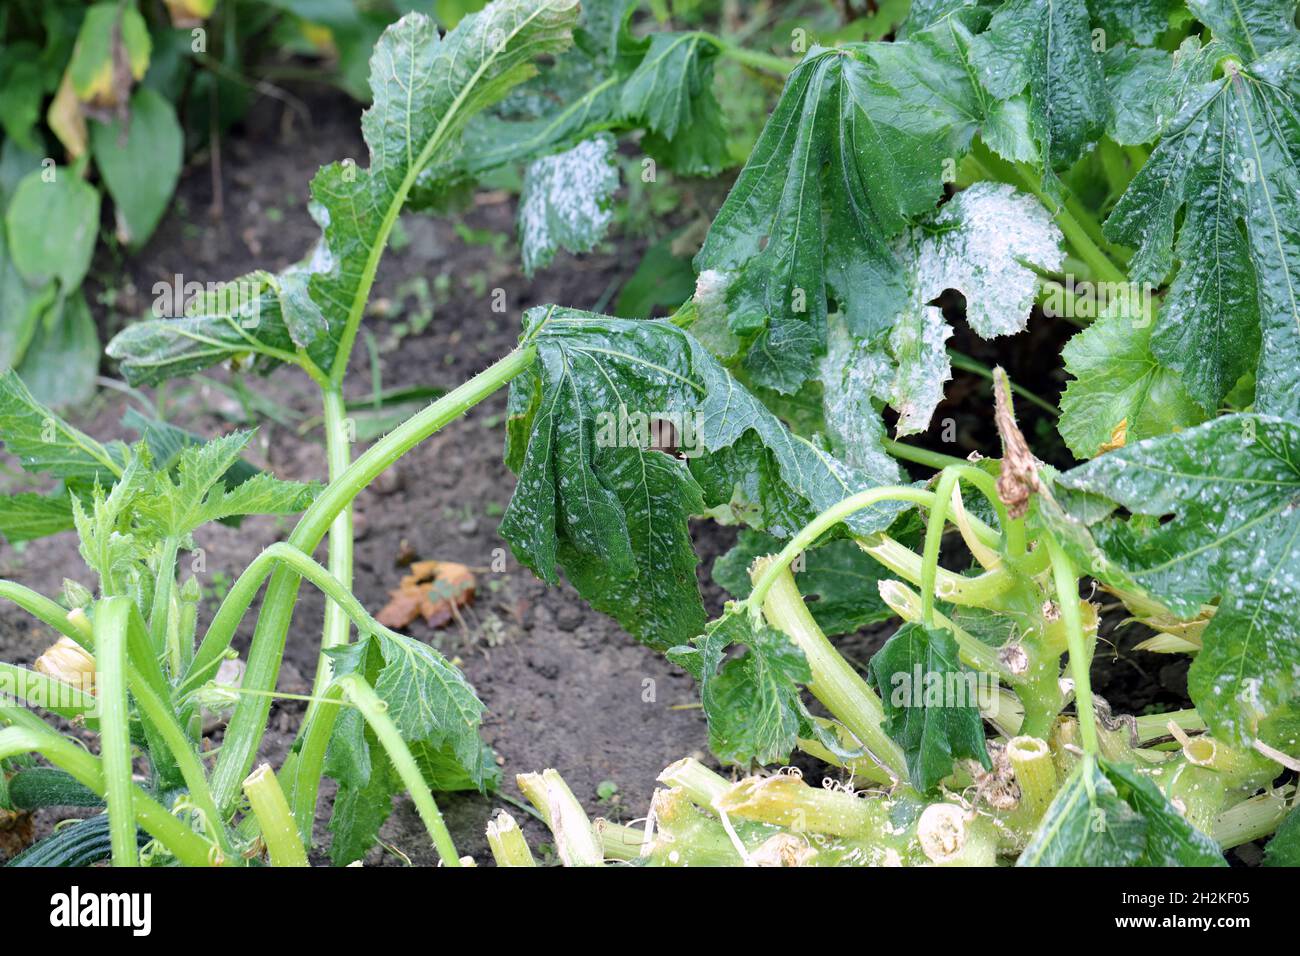 Schimmel auf Zucchini-Blatt, Zucchini mit Krankheit infiziert und durch Frost beschädigt. Stockfoto